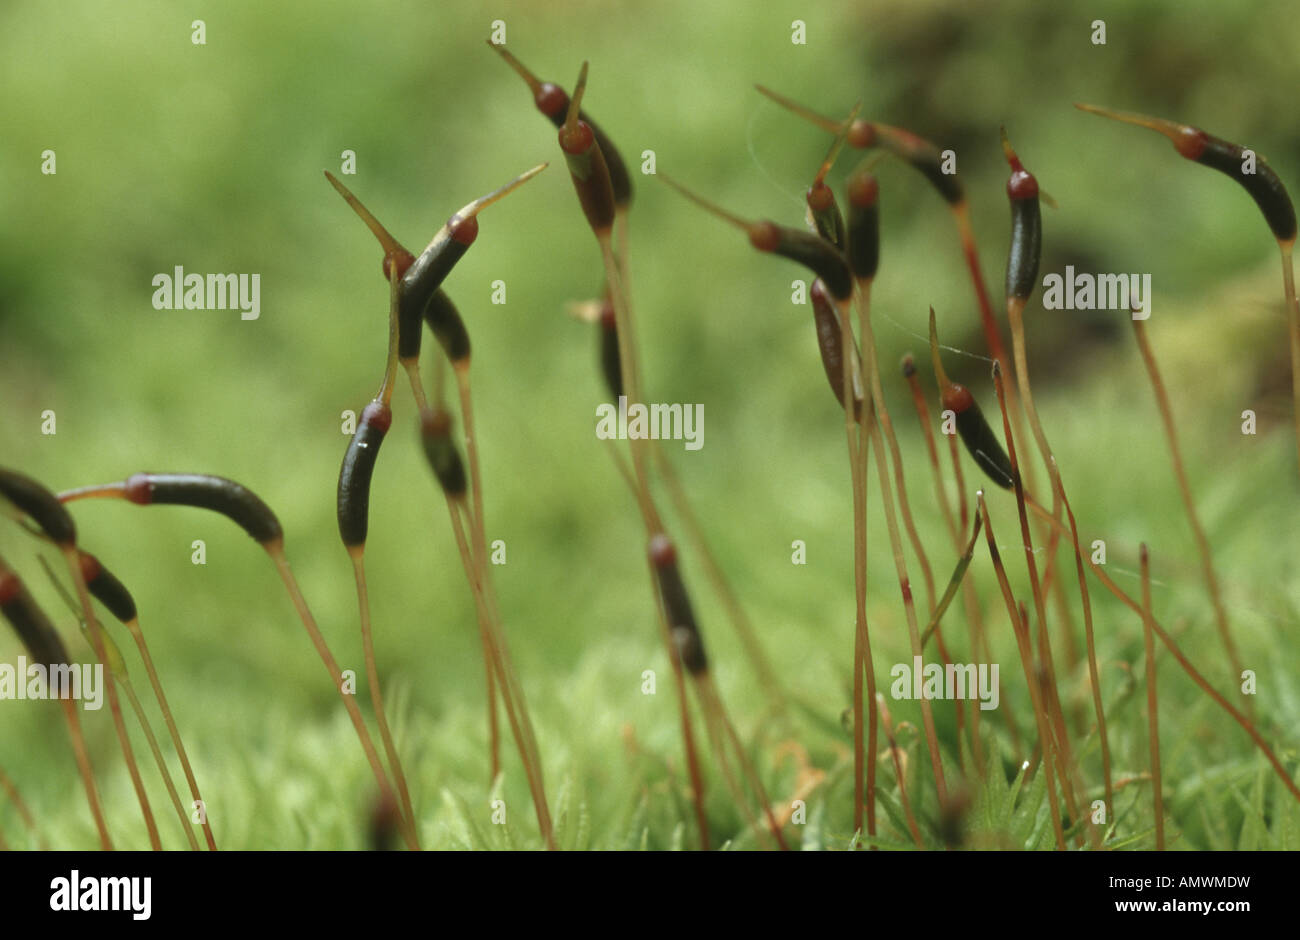 brachythecium moss (Brachythecium velutinum), sporophytes Stock Photo